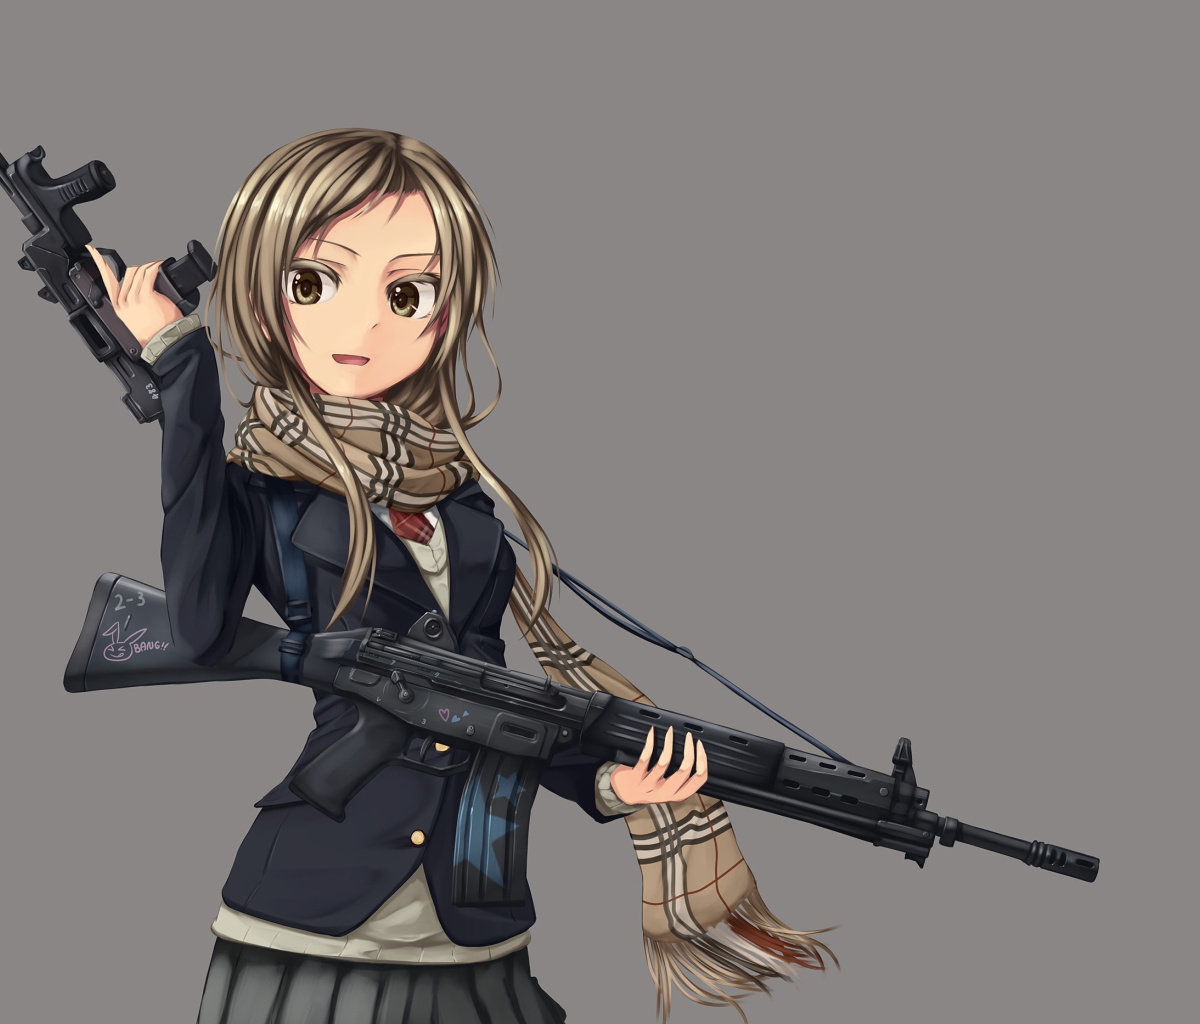 Обои Anime girl with gun 1200x1024